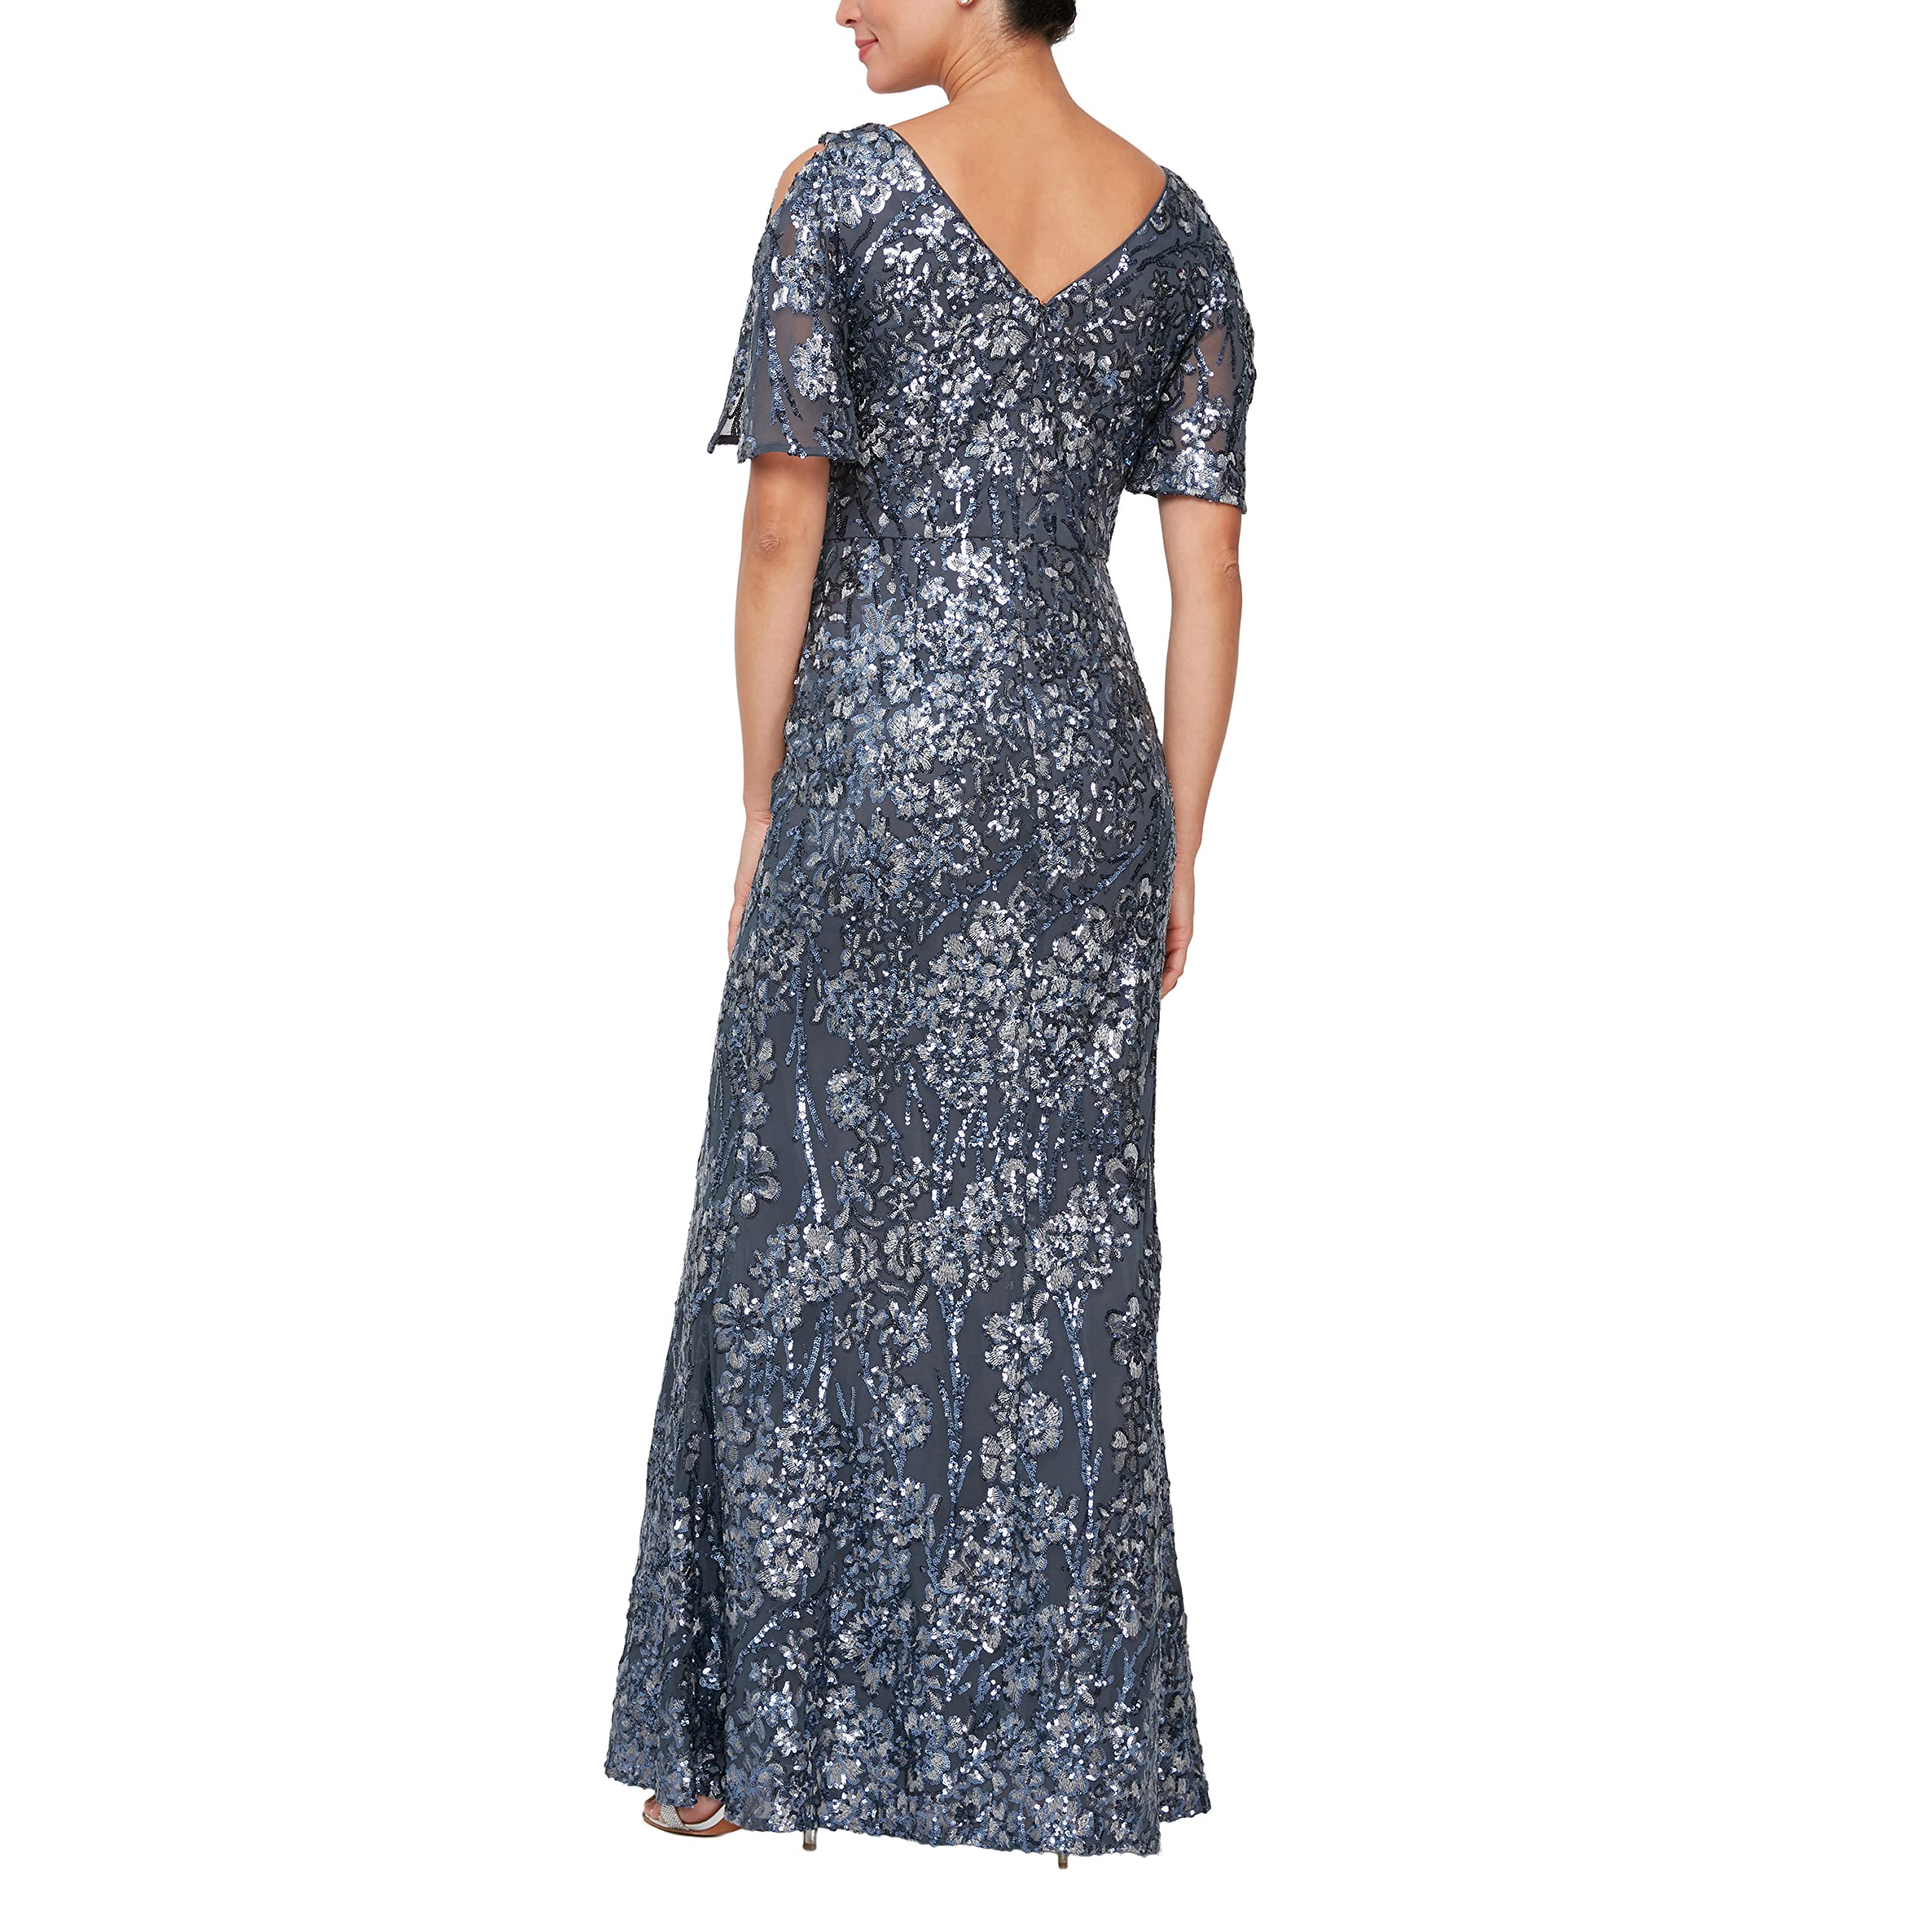 Alex Evenings Women's Long Sequin Dress with Flutter Sleeves